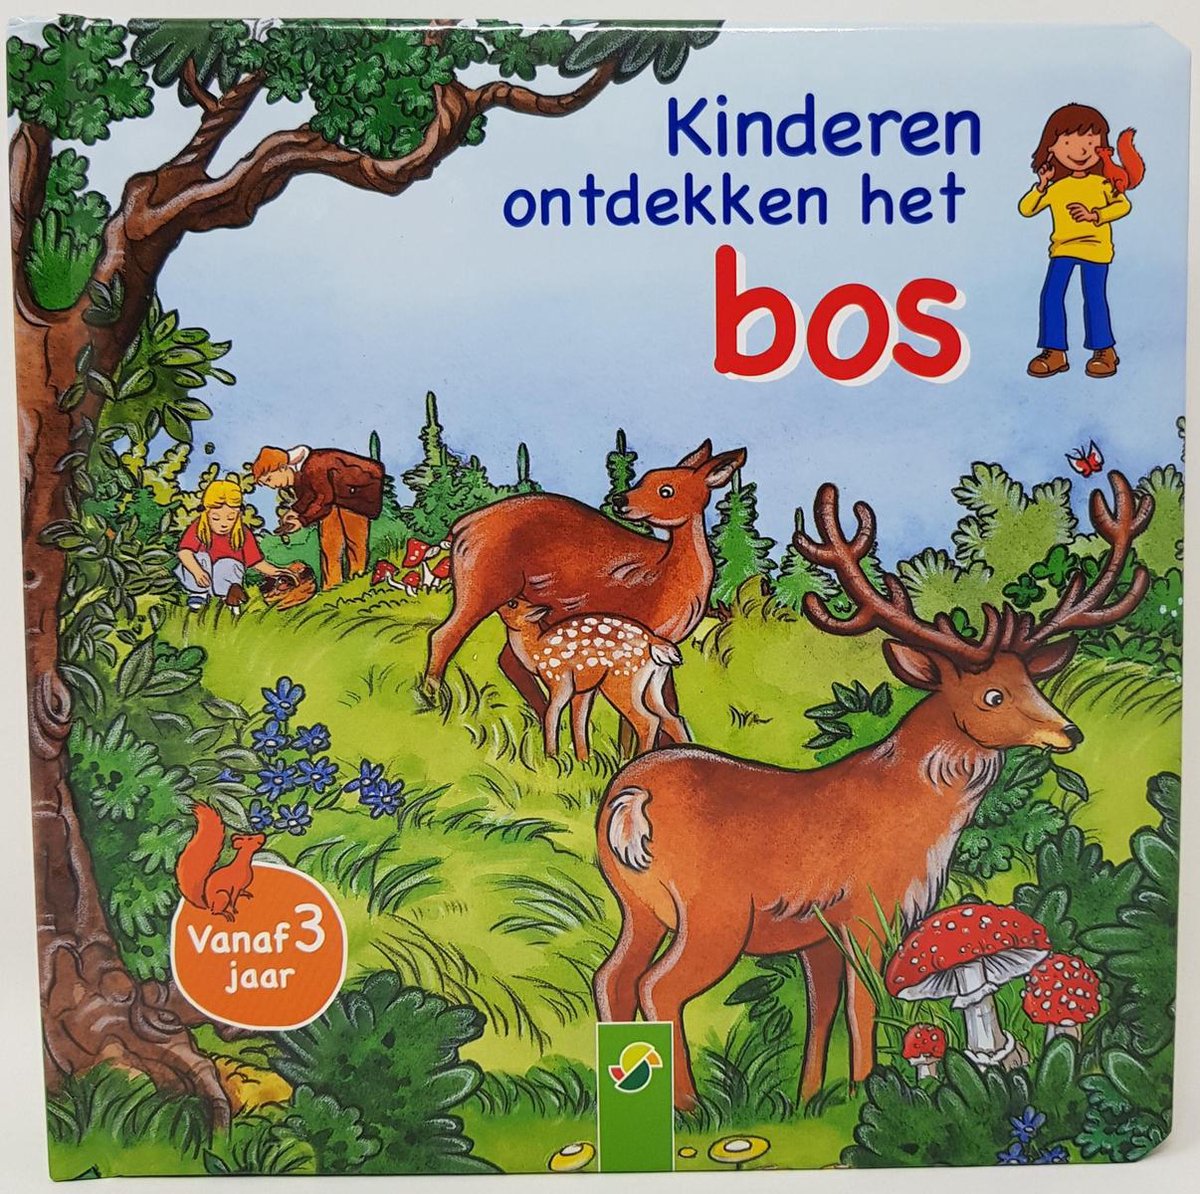 Kinderen ontdekken het bos - boek - kinderboek - leerzaam - educatief - voorlezen - vanaf 3 jaar oud